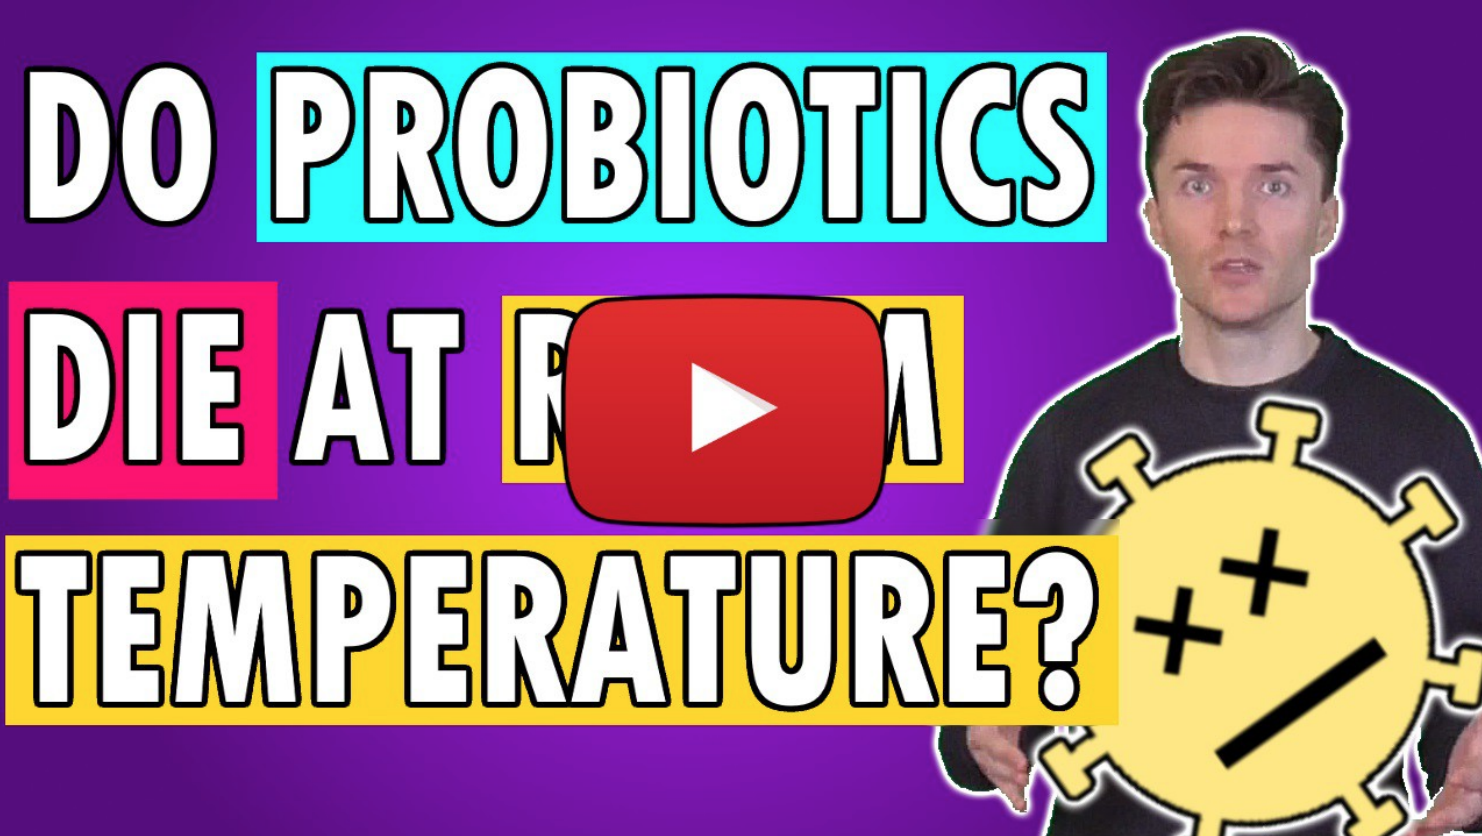 Do Probiotics Die at Room Temperature?